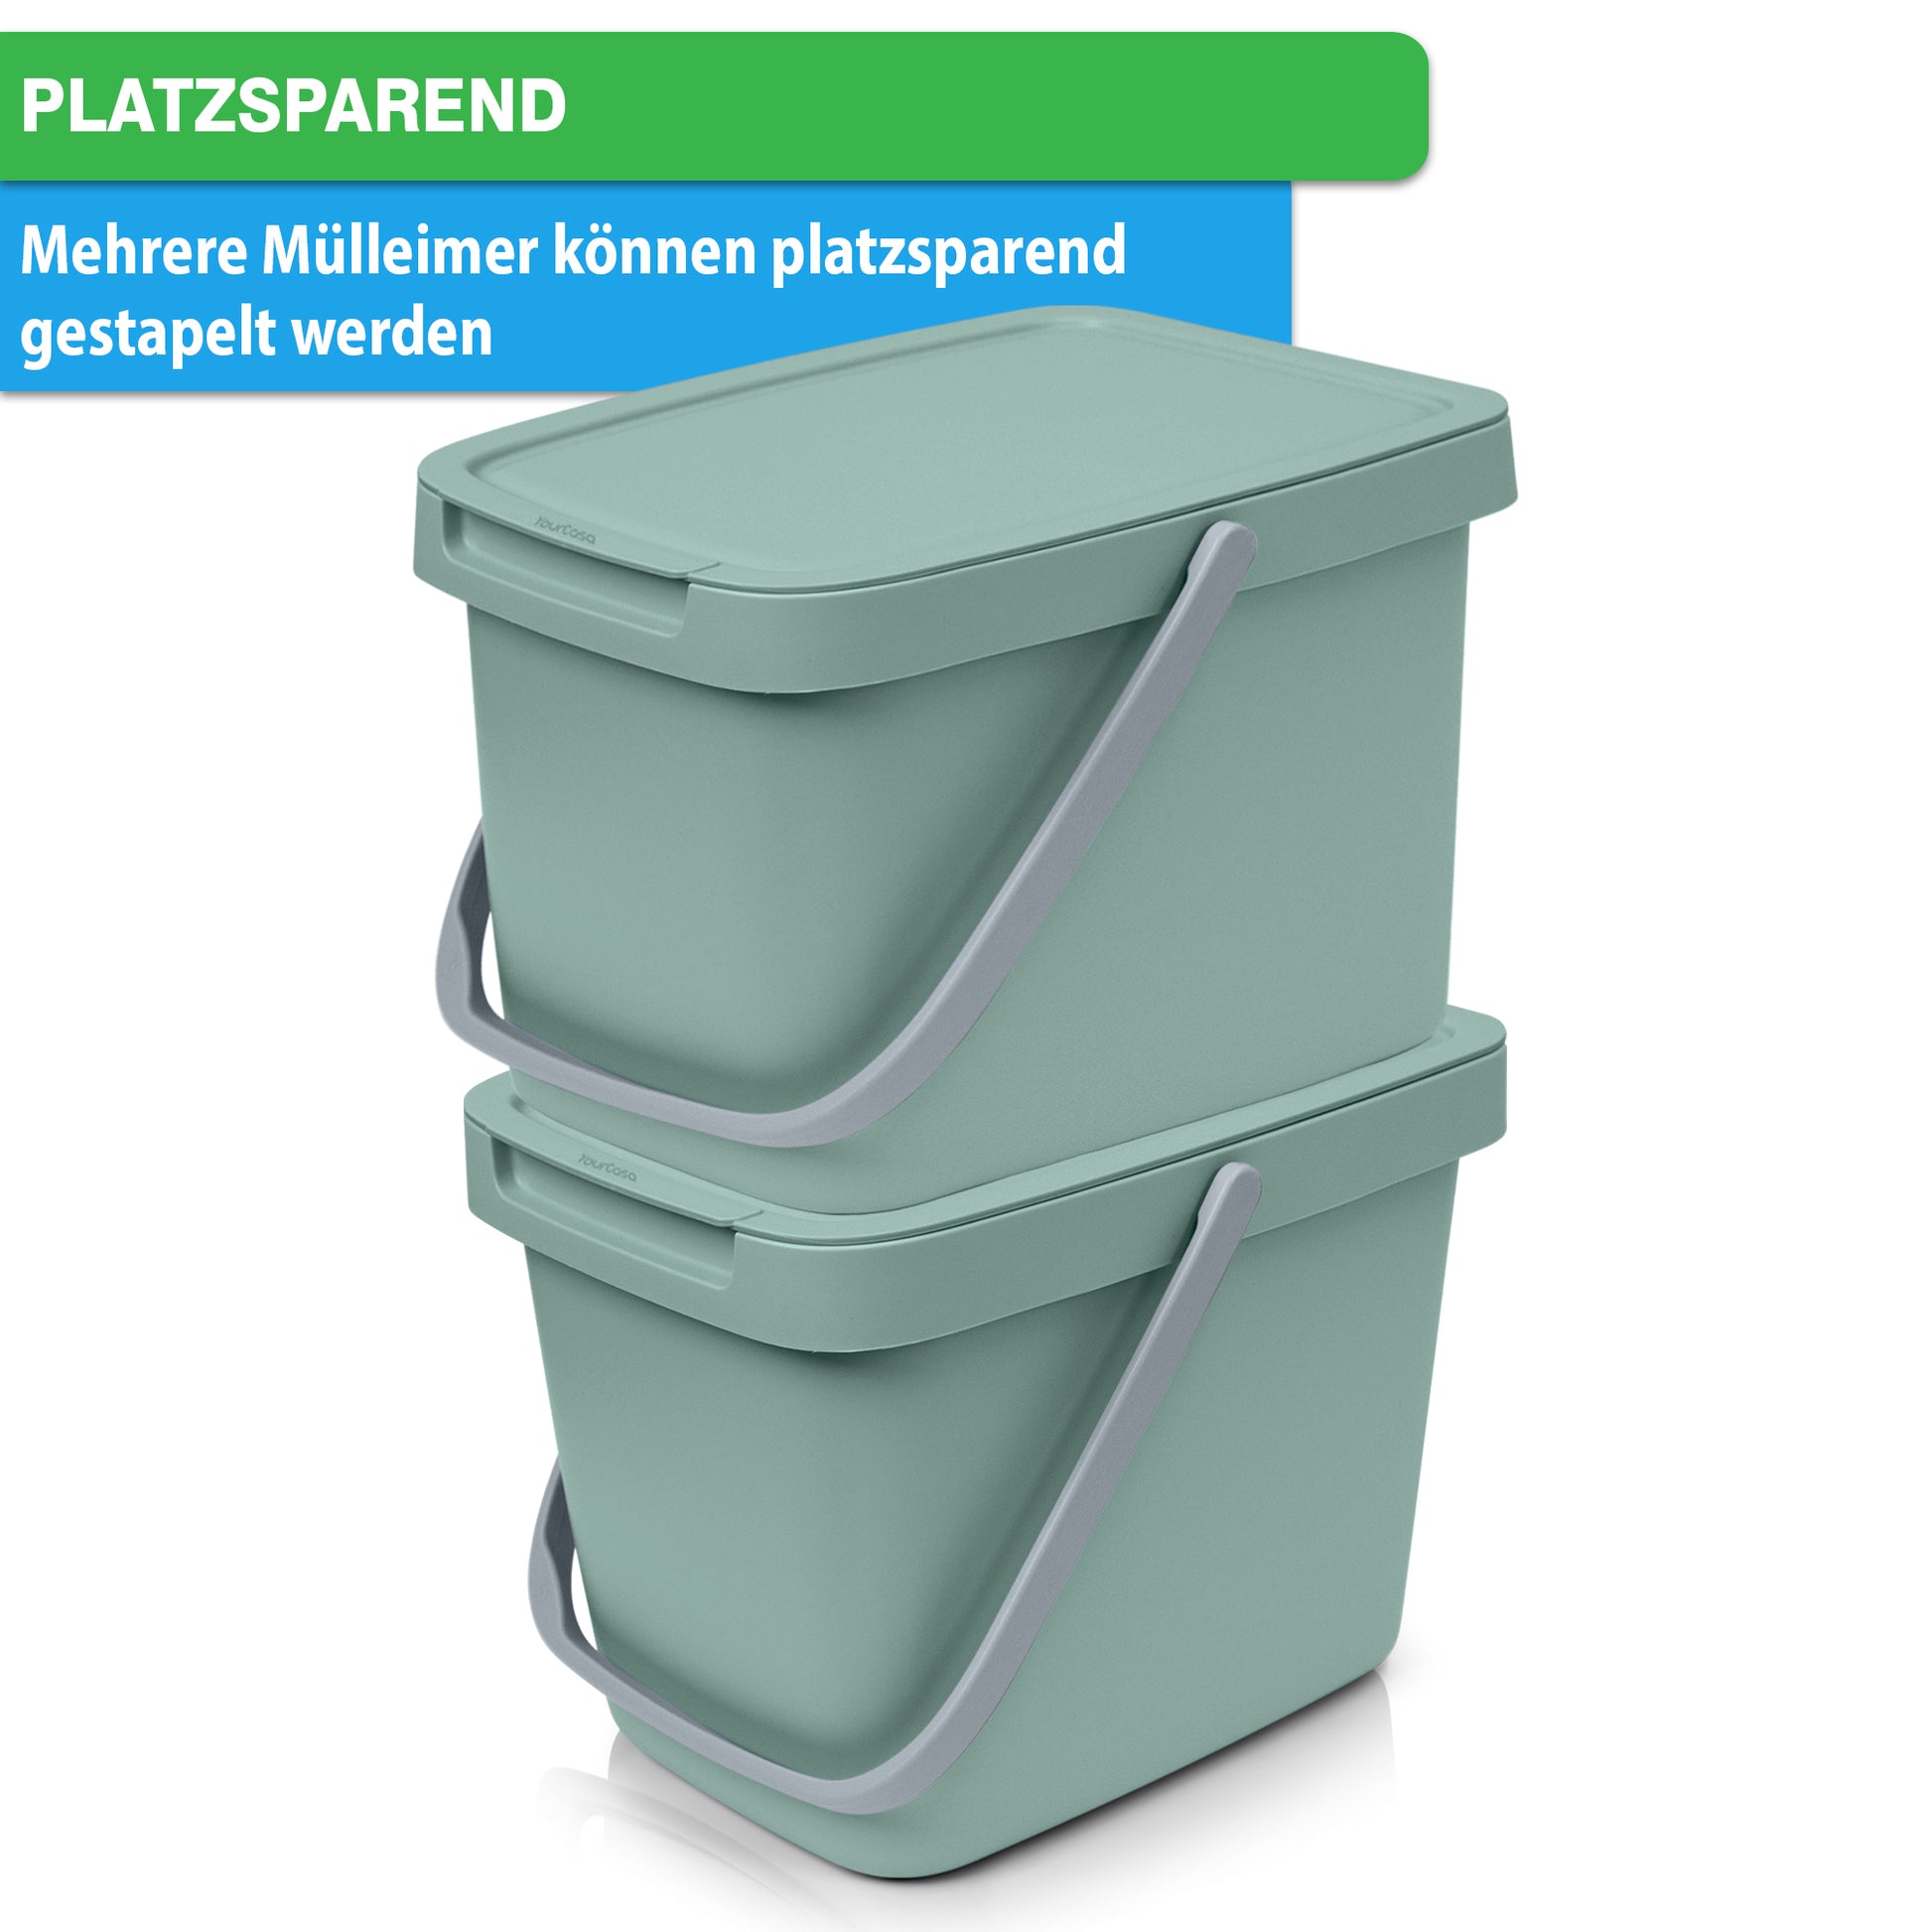 Zwei stapelbare grüne YourCasa®-Aufbewahrungsbehälter mit Griffen und einem platzsparenden Etikett zur Mülltrennung.